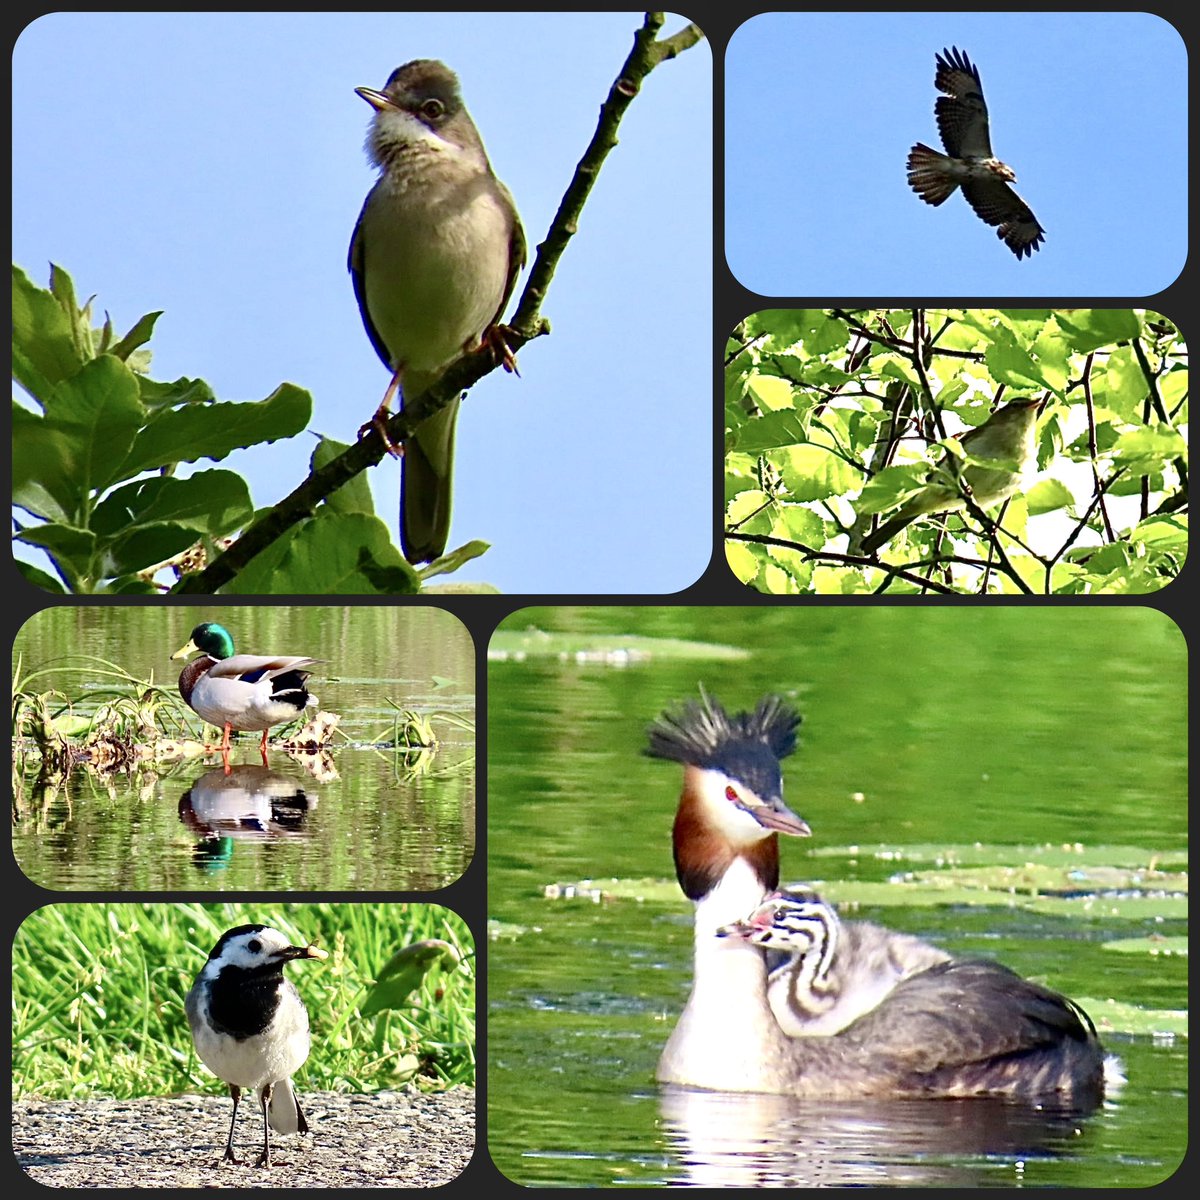 Dag 11 van #mei_nmooistefotos met het thema #Vogels Een initiatief van @bosw8er_jochem Een aantal vogels die ik gisteren zag in De Deelen in Friesland. Grasmus Buizerd Fitis Fuut met jonkie Witte kwikstaart Wilde eend @vogelnieuws @VroegeVogels @pictureofNL @visitfriesland